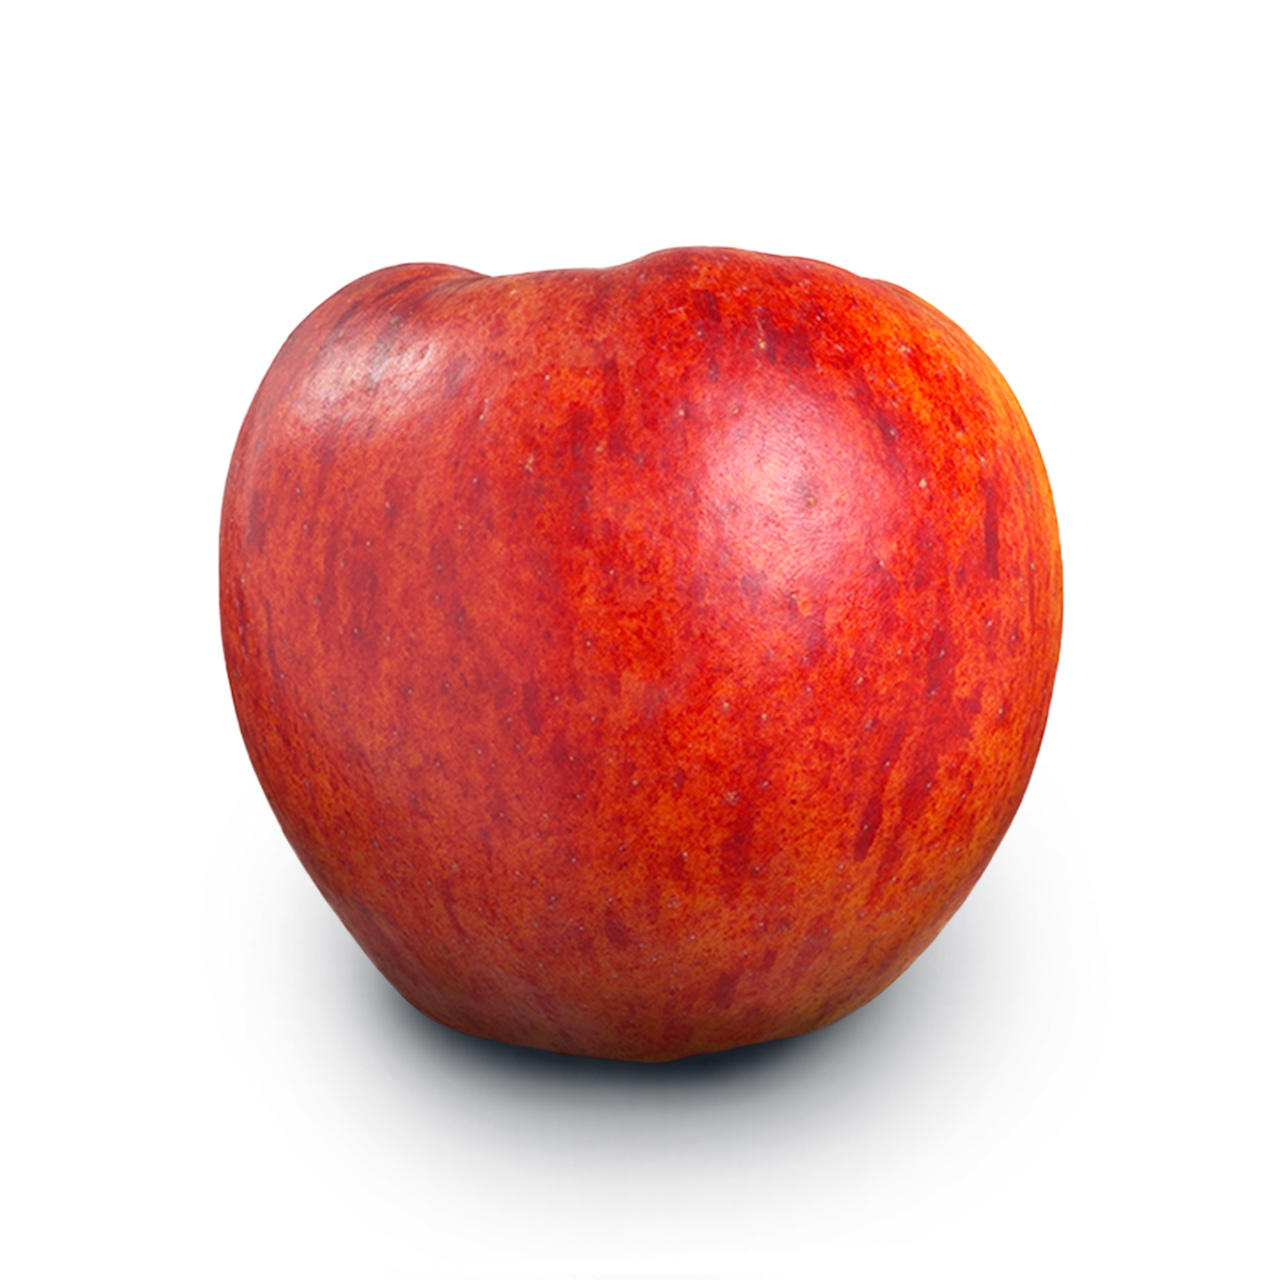 Rødt æble af sorten rubens. Æblet er fritlagt og ligger på hvid baggrund